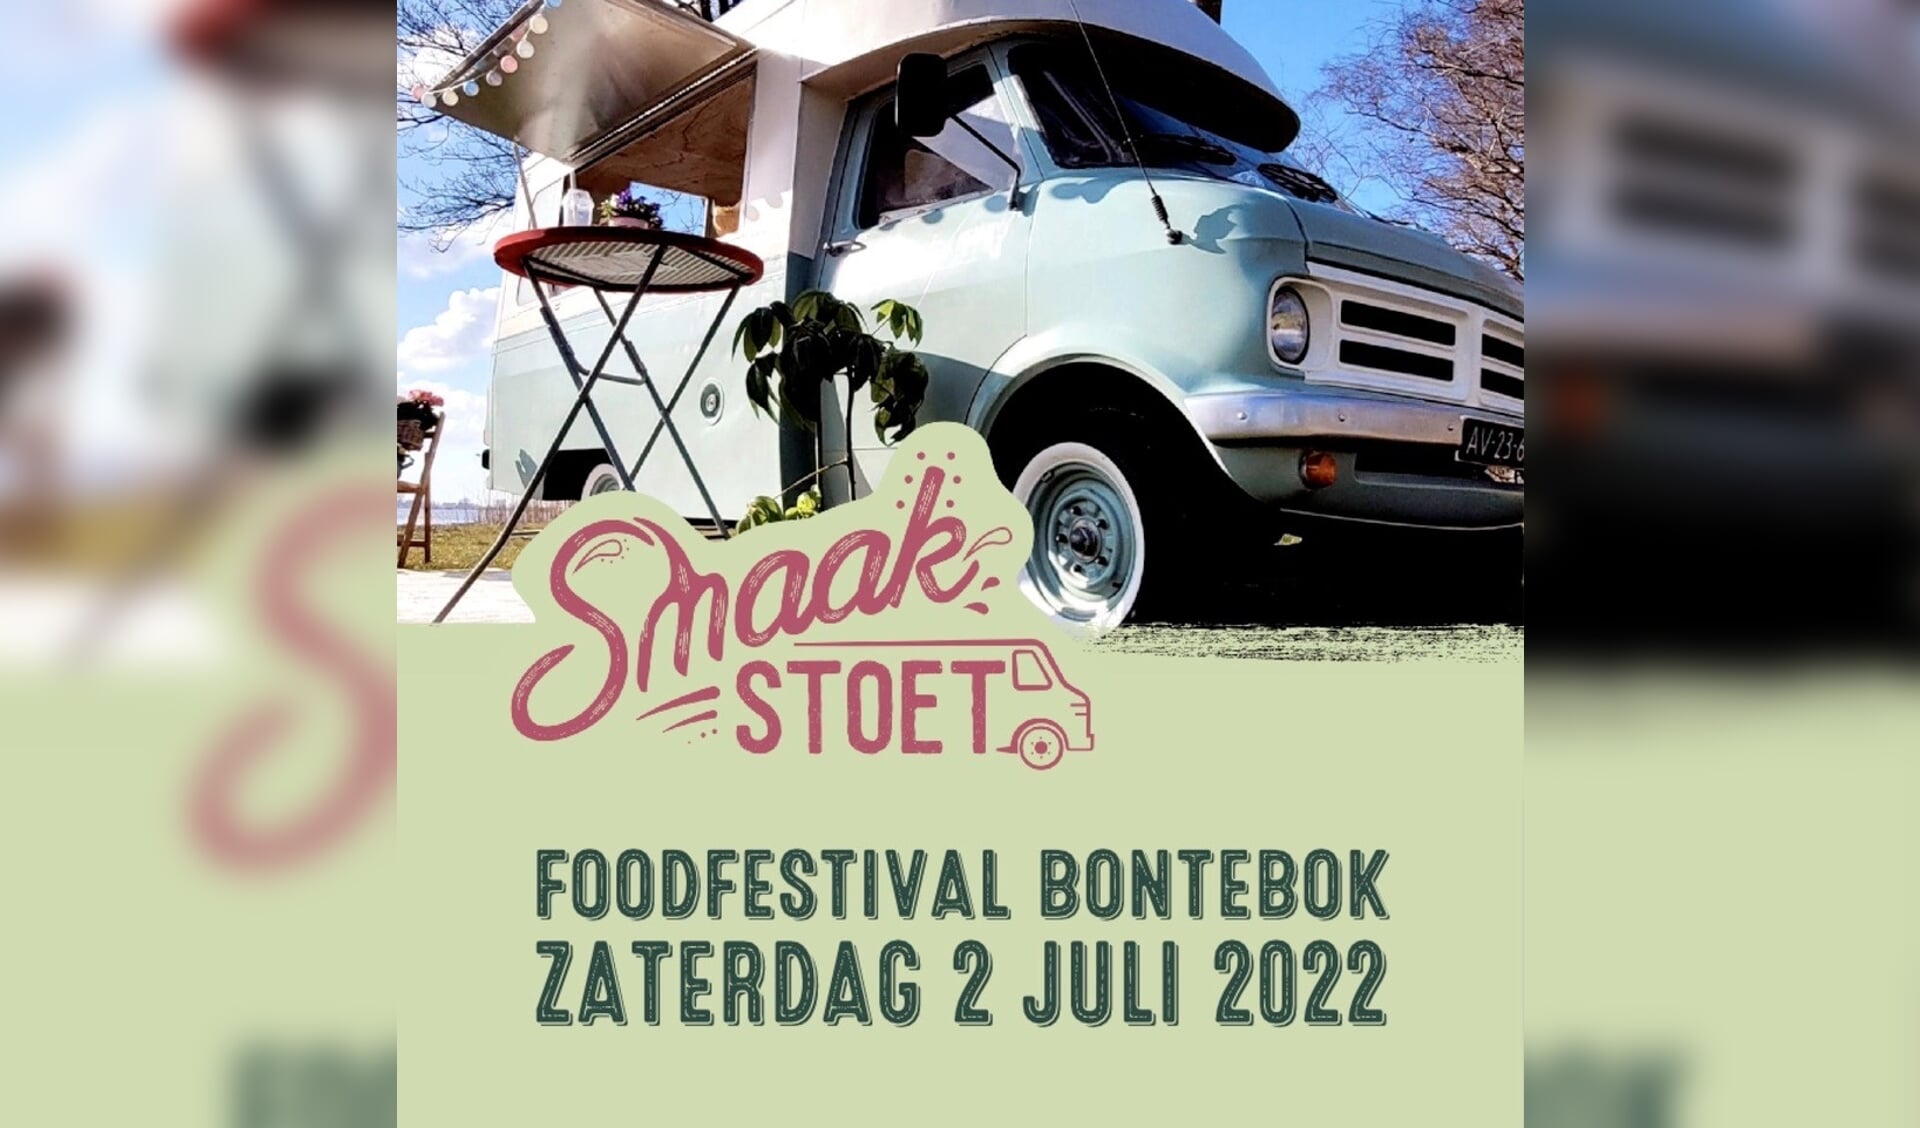 Foodfestival Bontebok